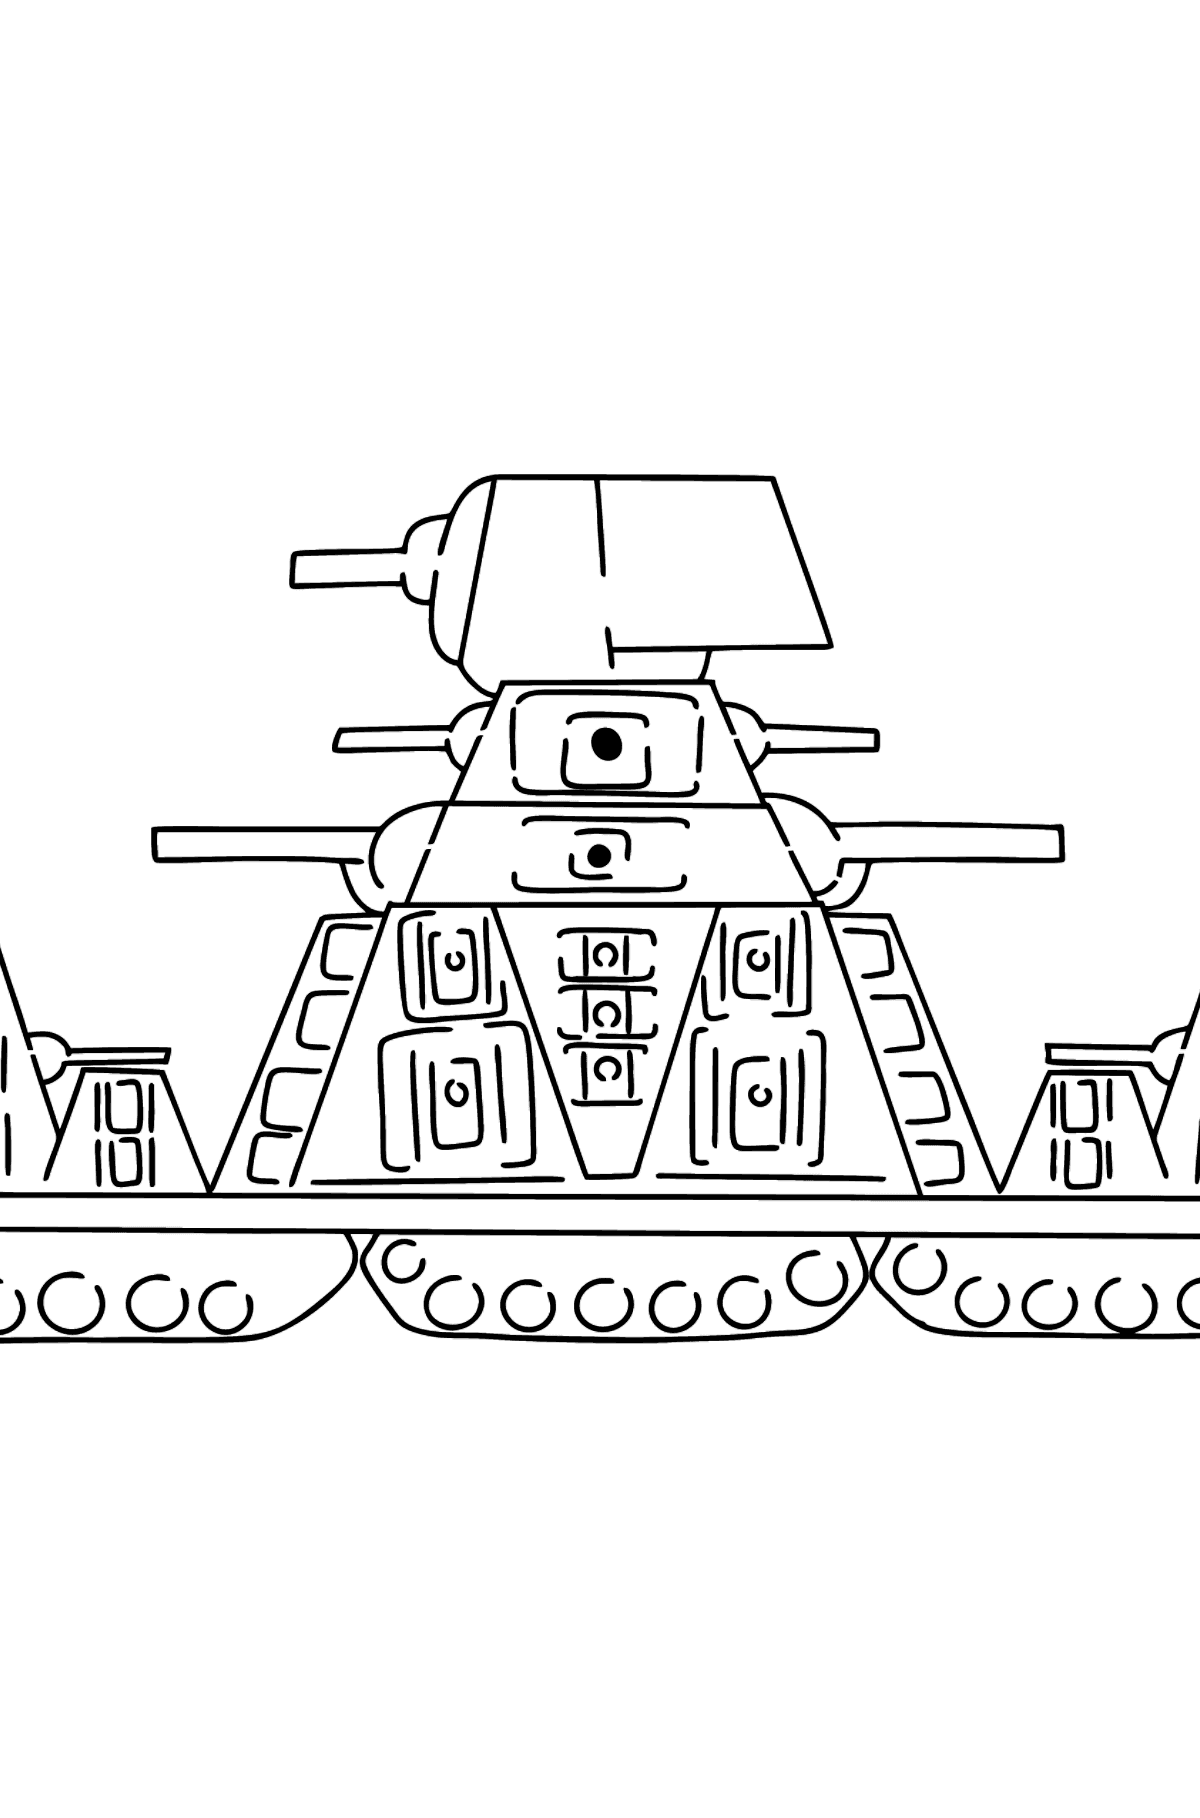 Kleurplaat tank KV-44 - kleurplaten voor kinderen